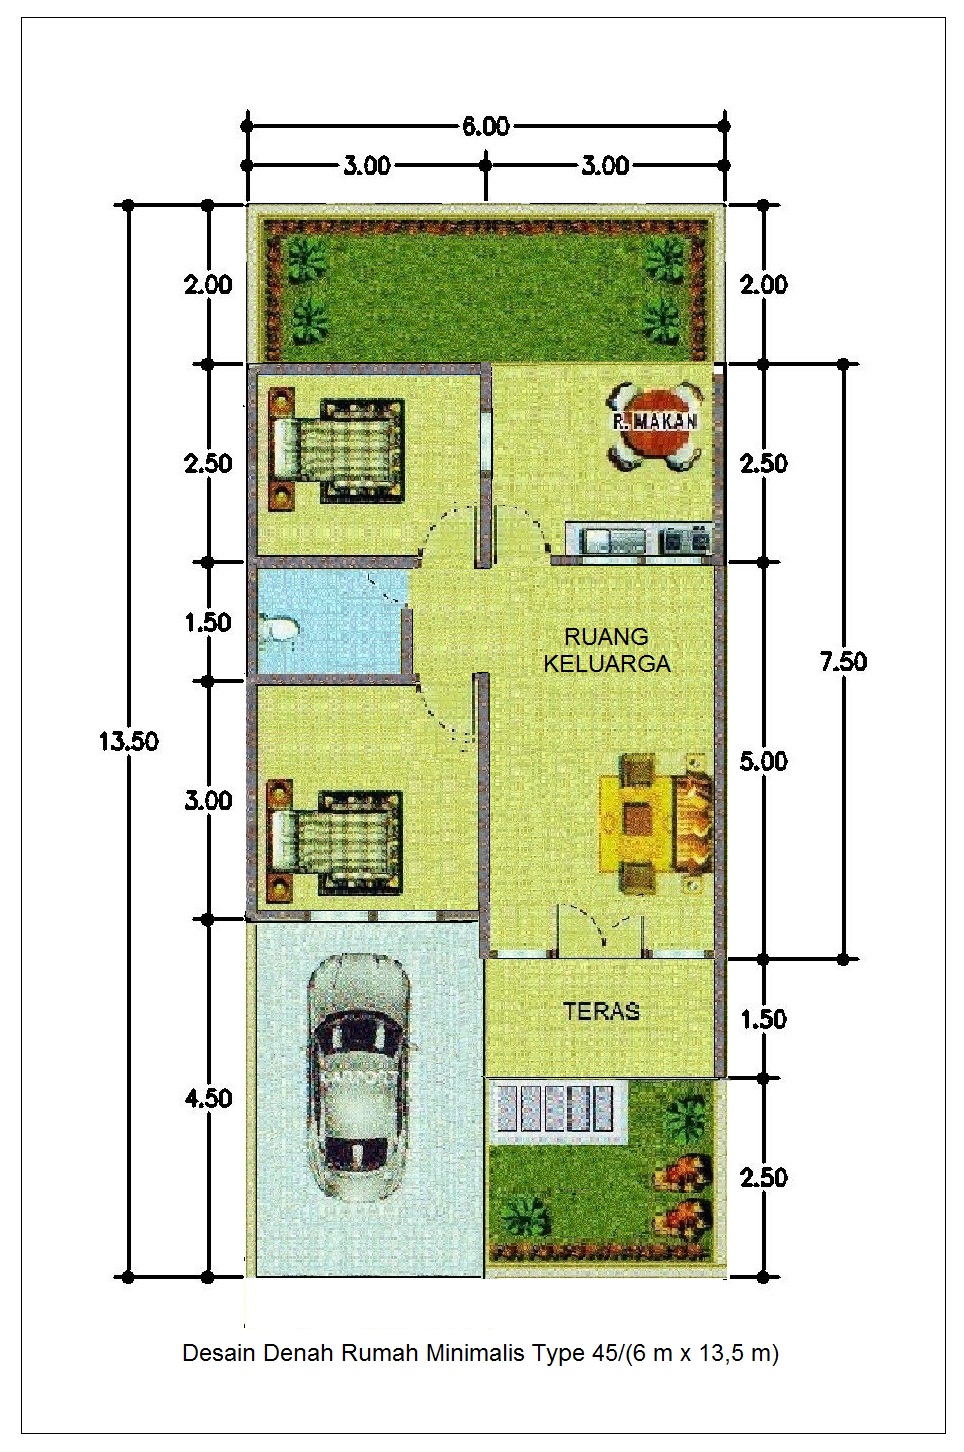 Desain Denah Rumah Minimalis Type 45/(6m x 13,5m)  Info 